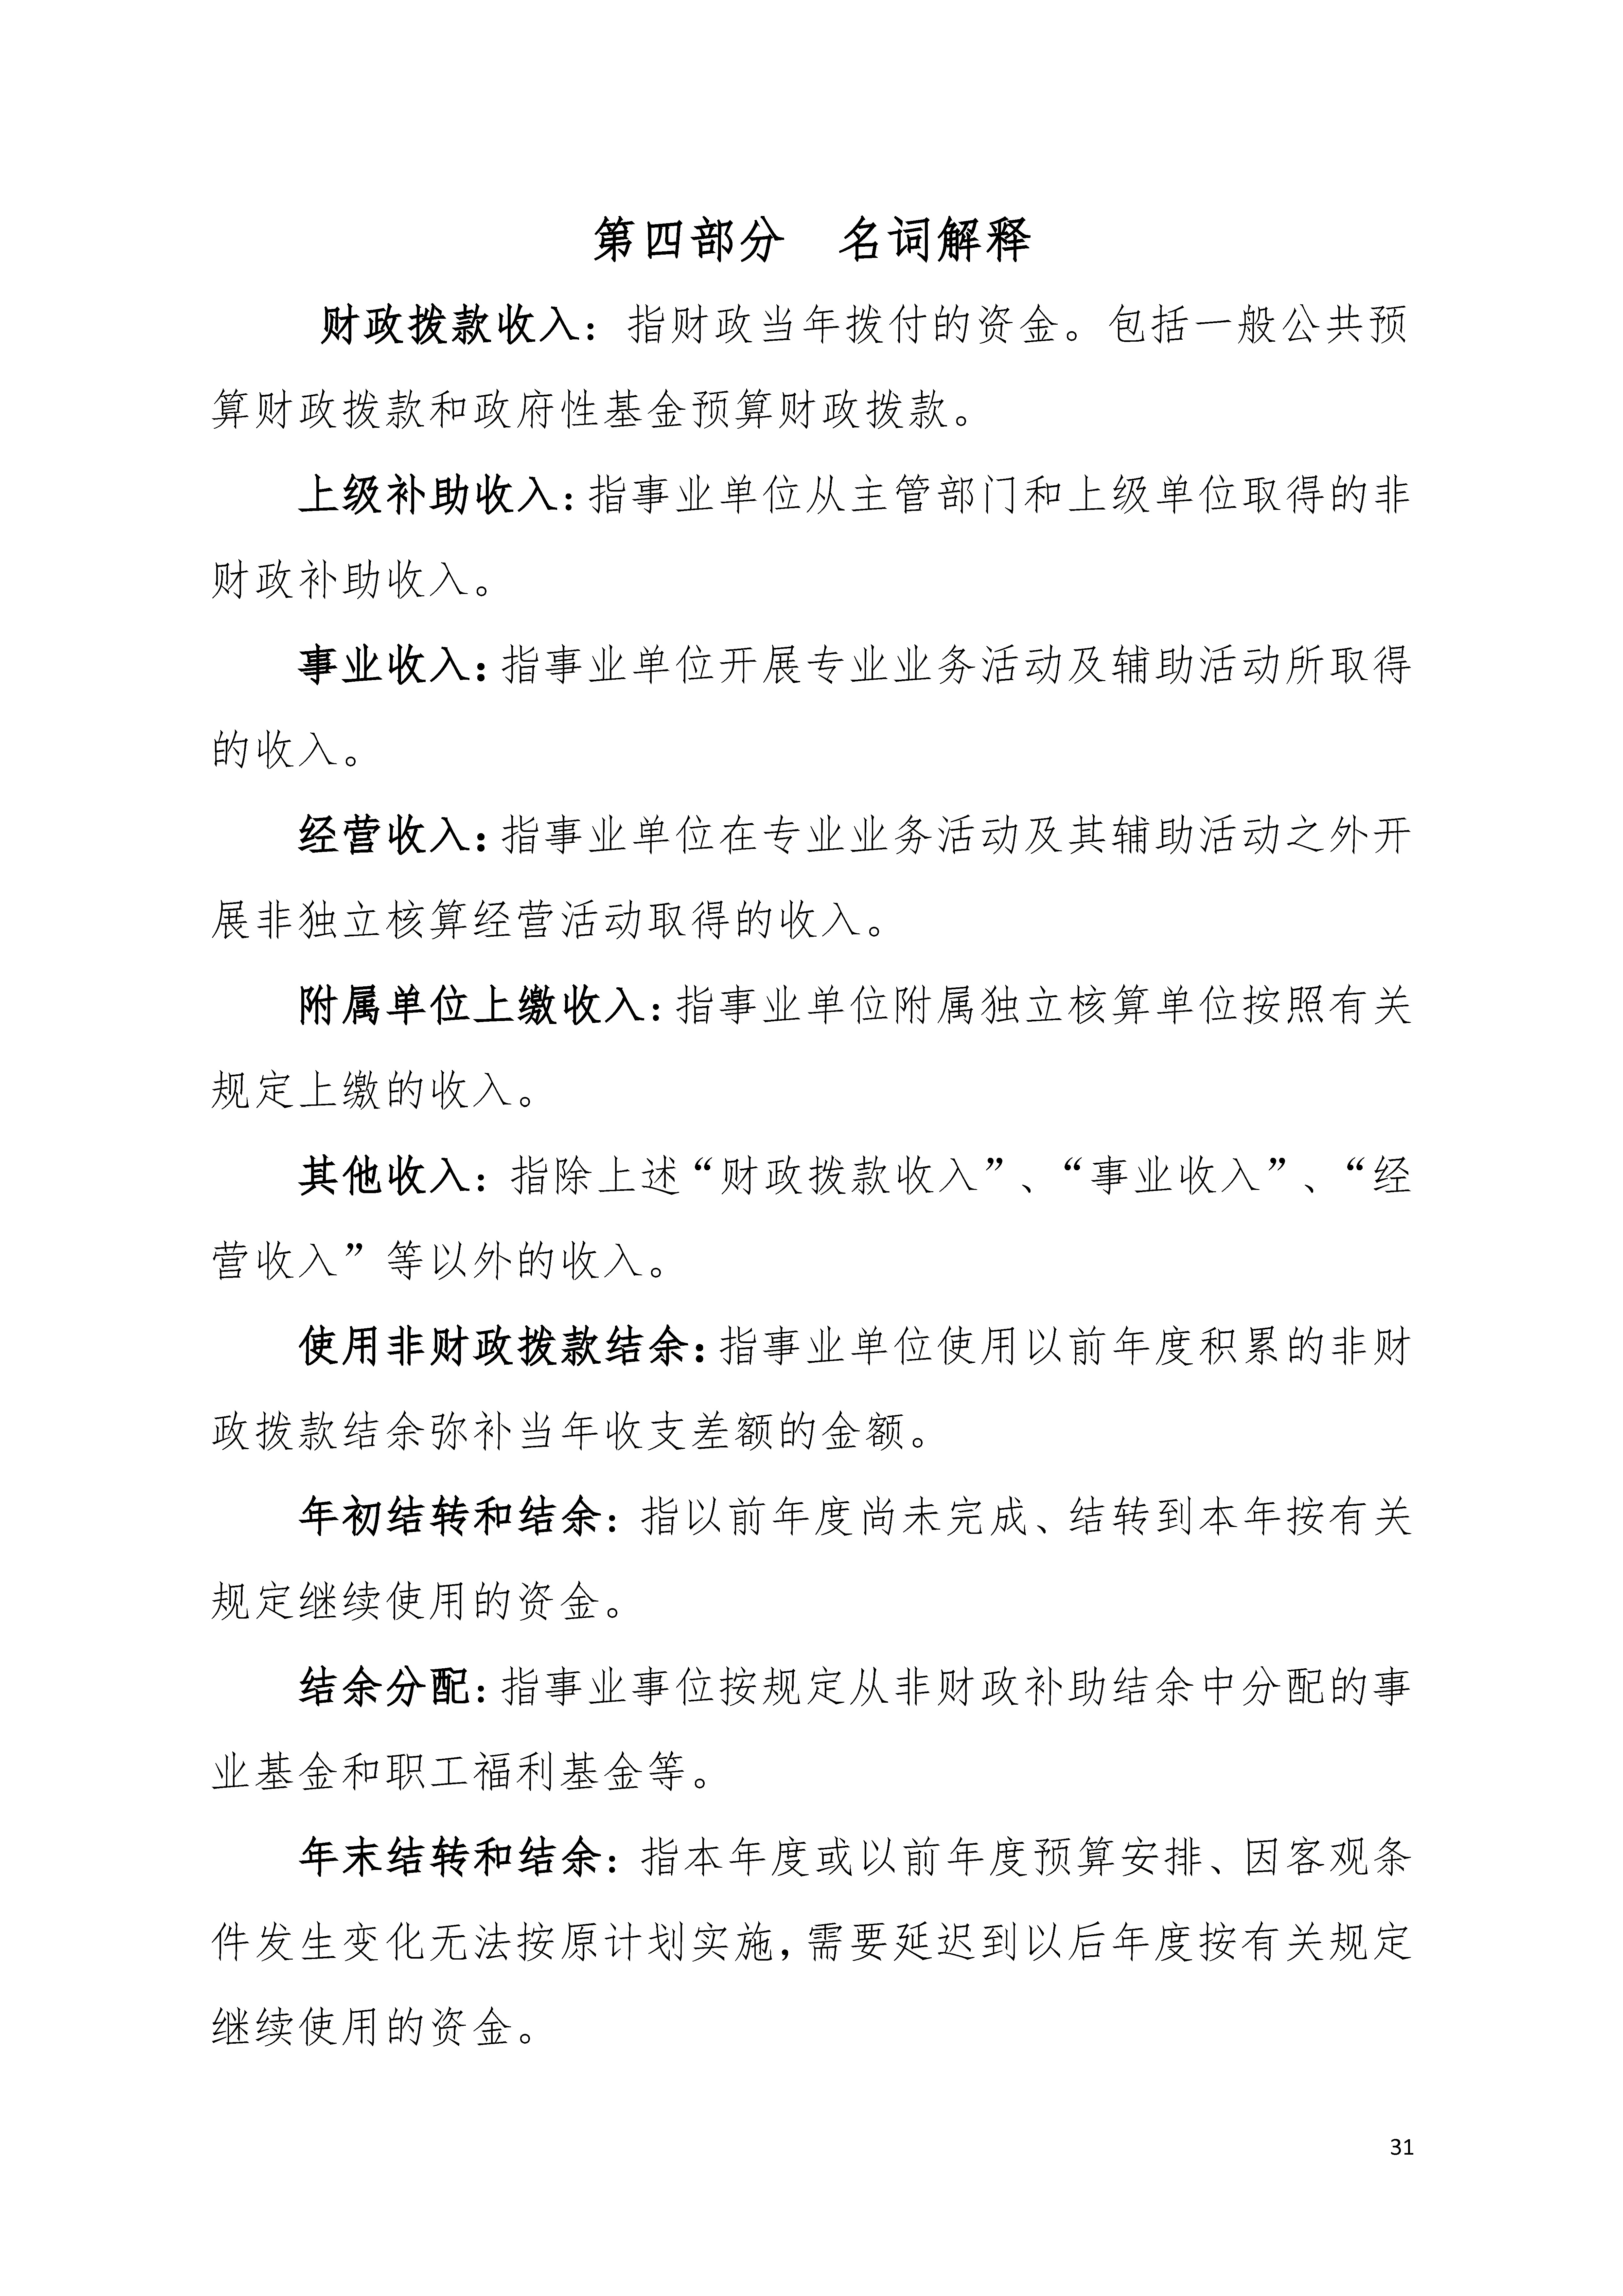 2020年广东省残疾人康复中心部门决算_页面_31.jpg